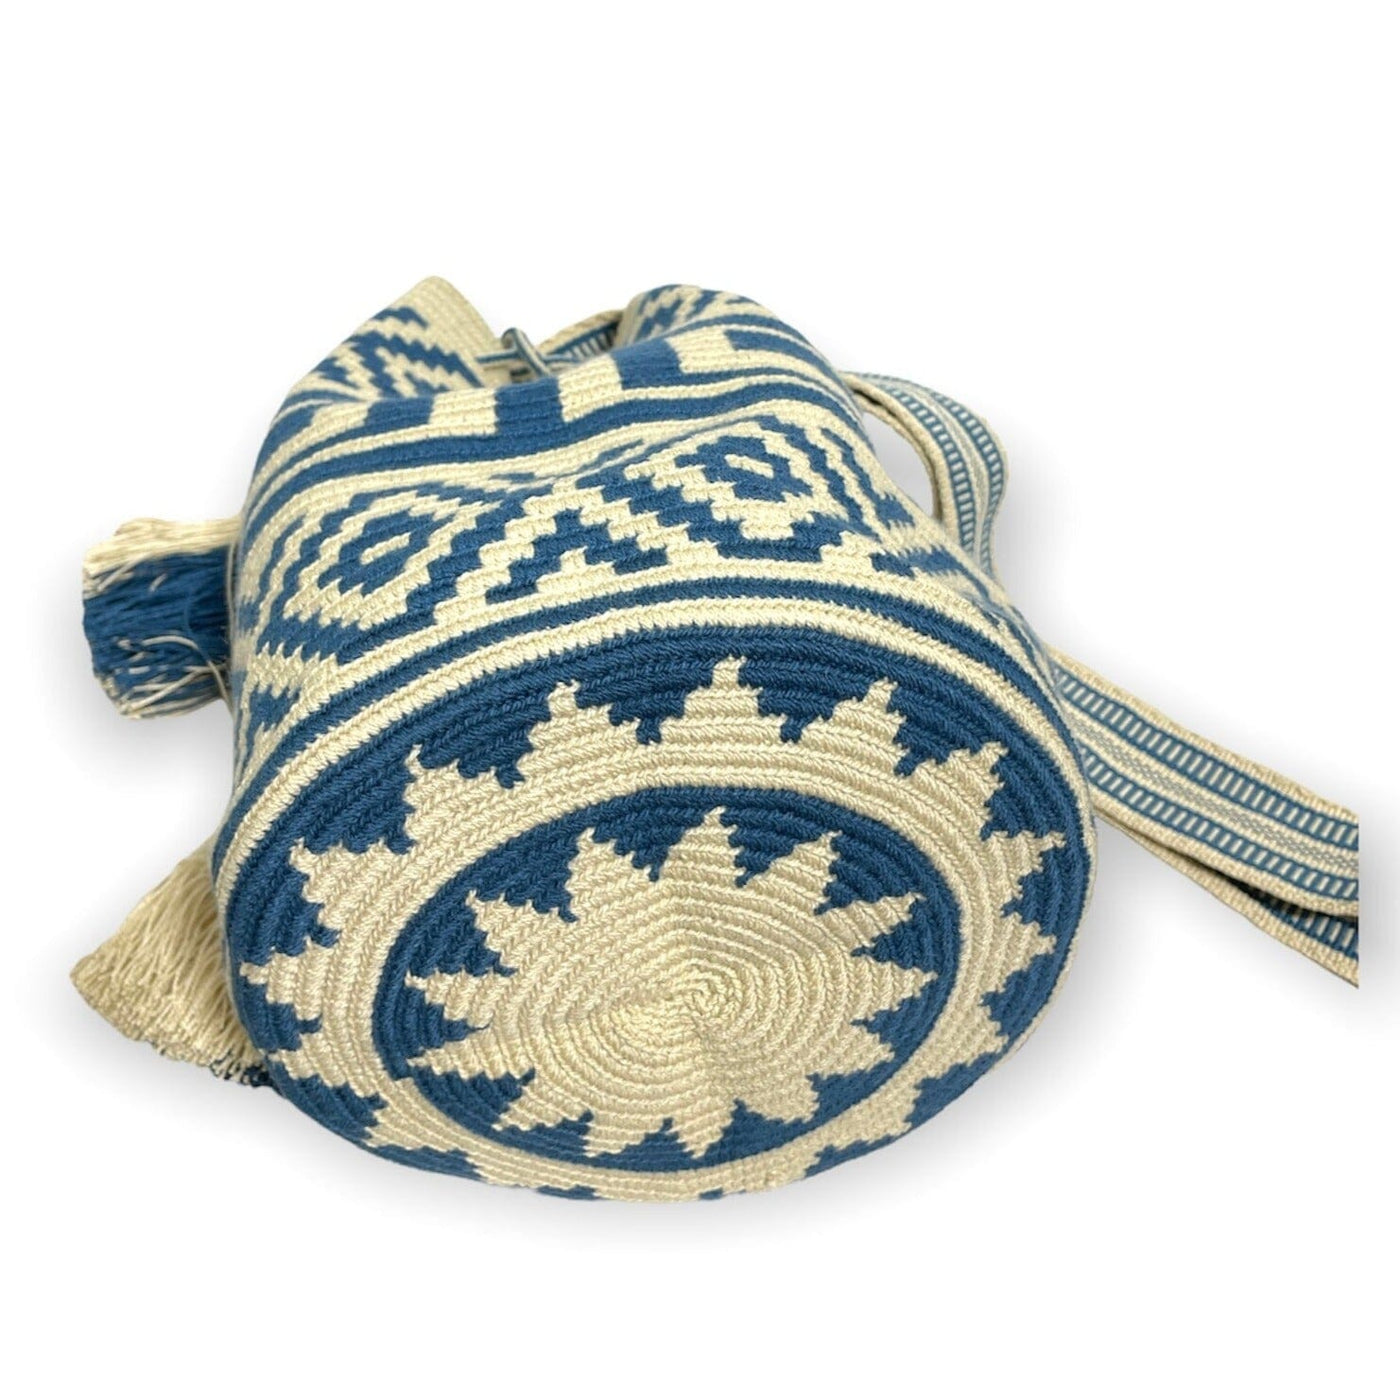 Neutral Blue Crochet Bags | Crossbody bohemian handbags